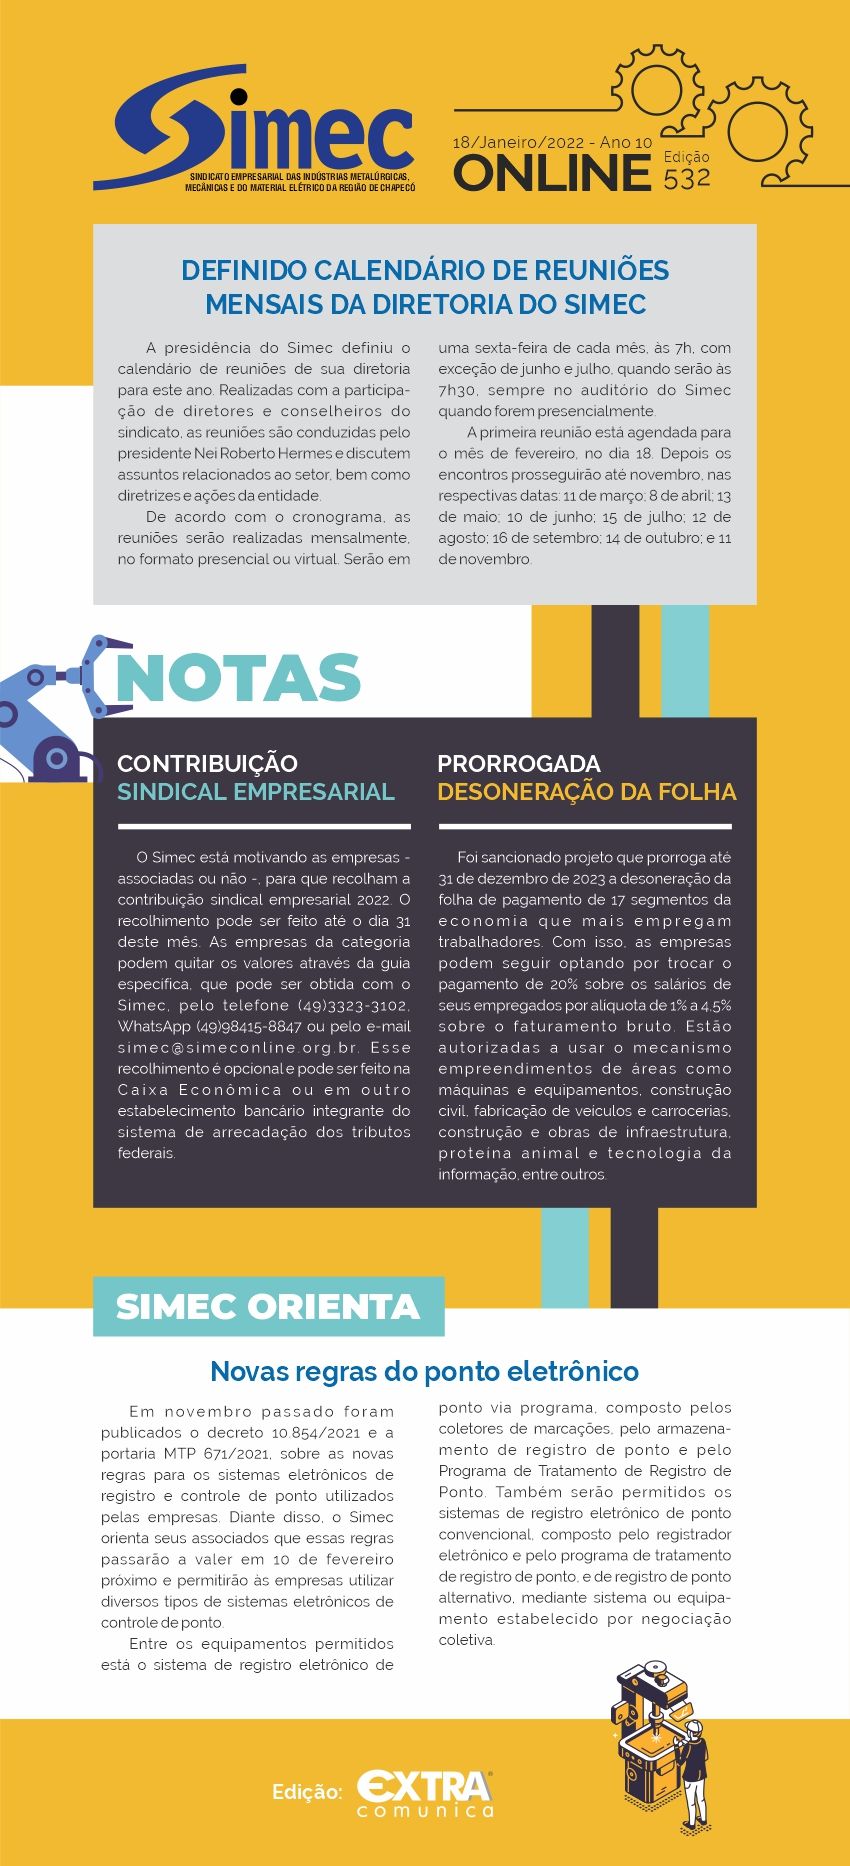 SIMEC - Sindicato das Indústrias Metalúrgicas, Mecânicas e do Material Elétrico de Chapecó/SC -